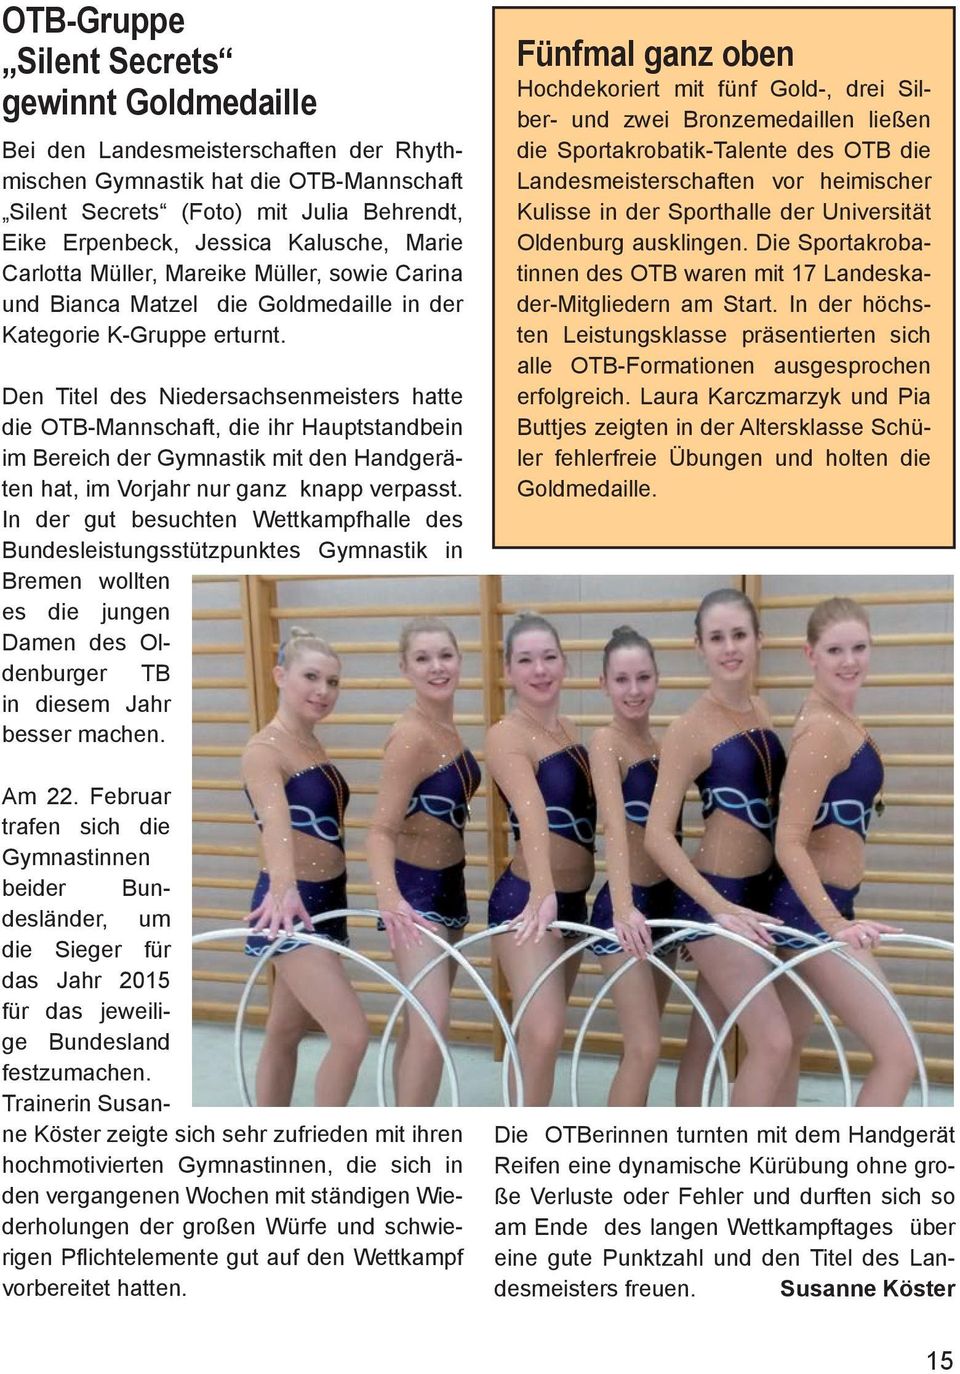 Den Titel des Niedersachsenmeisters hatte die OTB-Mannschaft, die ihr Hauptstandbein im Bereich der Gymnastik mit den Handgeräten hat, im Vorjahr nur ganz knapp verpasst.